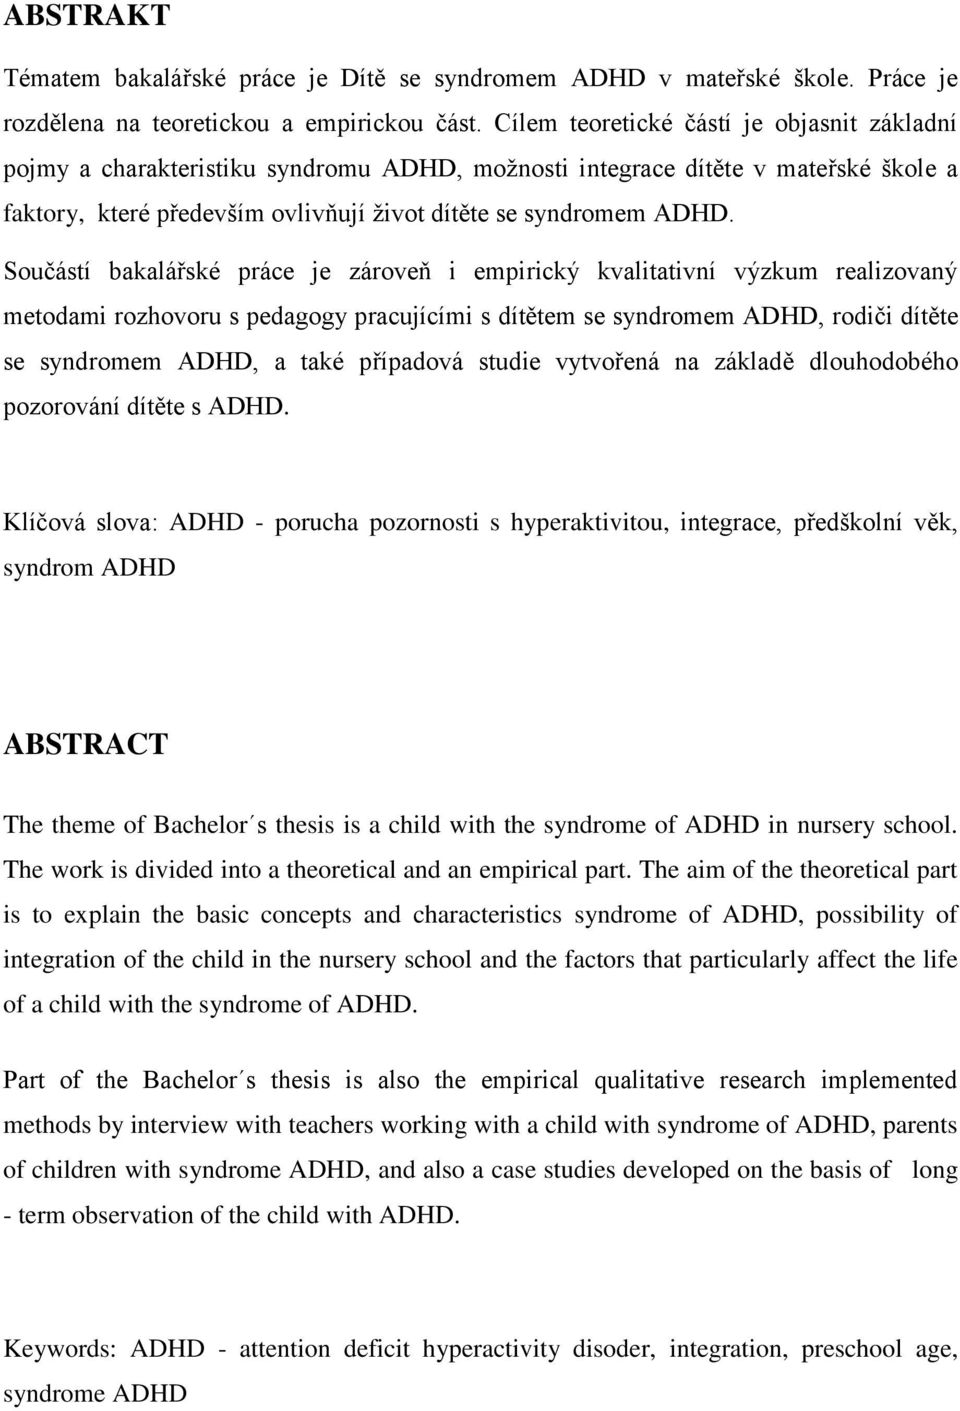 Součástí bakalářské práce je zároveň i empirický kvalitativní výzkum realizovaný metodami rozhovoru s pedagogy pracujícími s dítětem se syndromem ADHD, rodiči dítěte se syndromem ADHD, a také